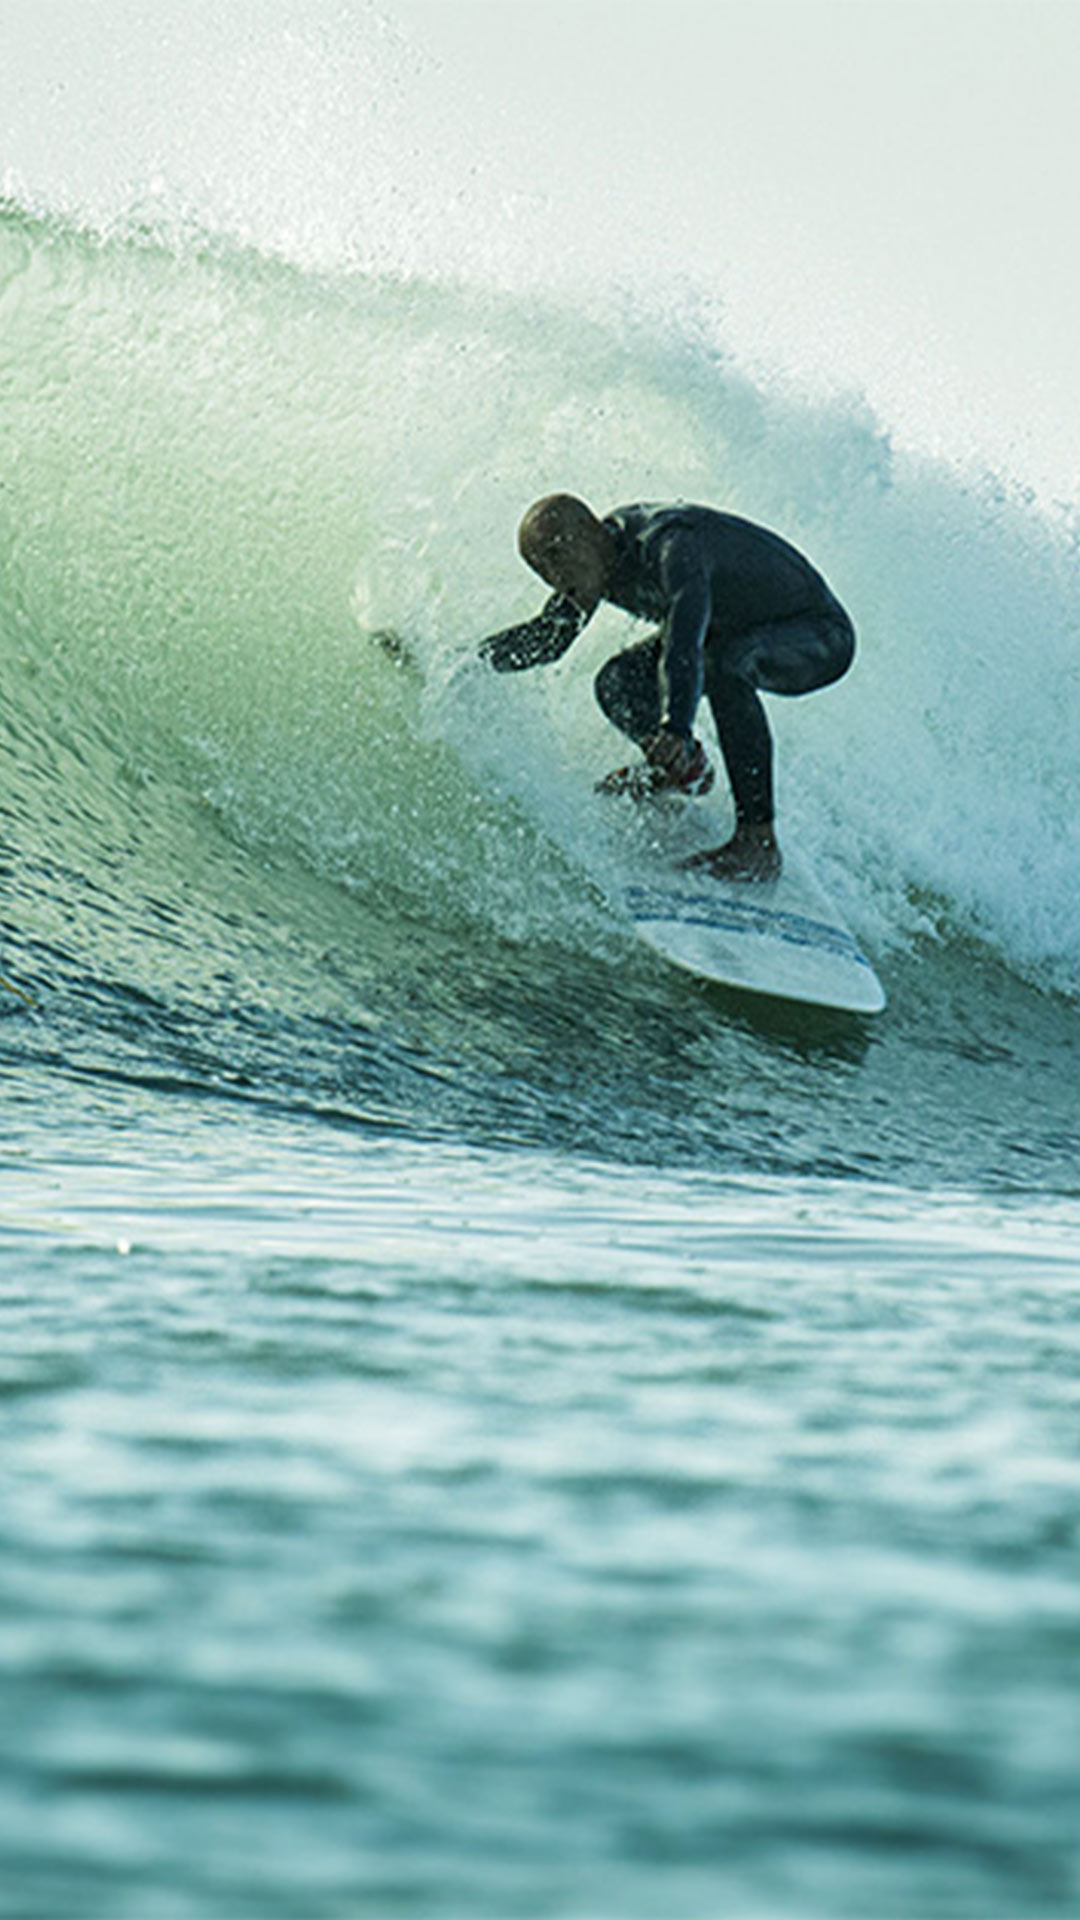 Un surfeur d'un niveau plus avancé surfe sur une grosse vague. 